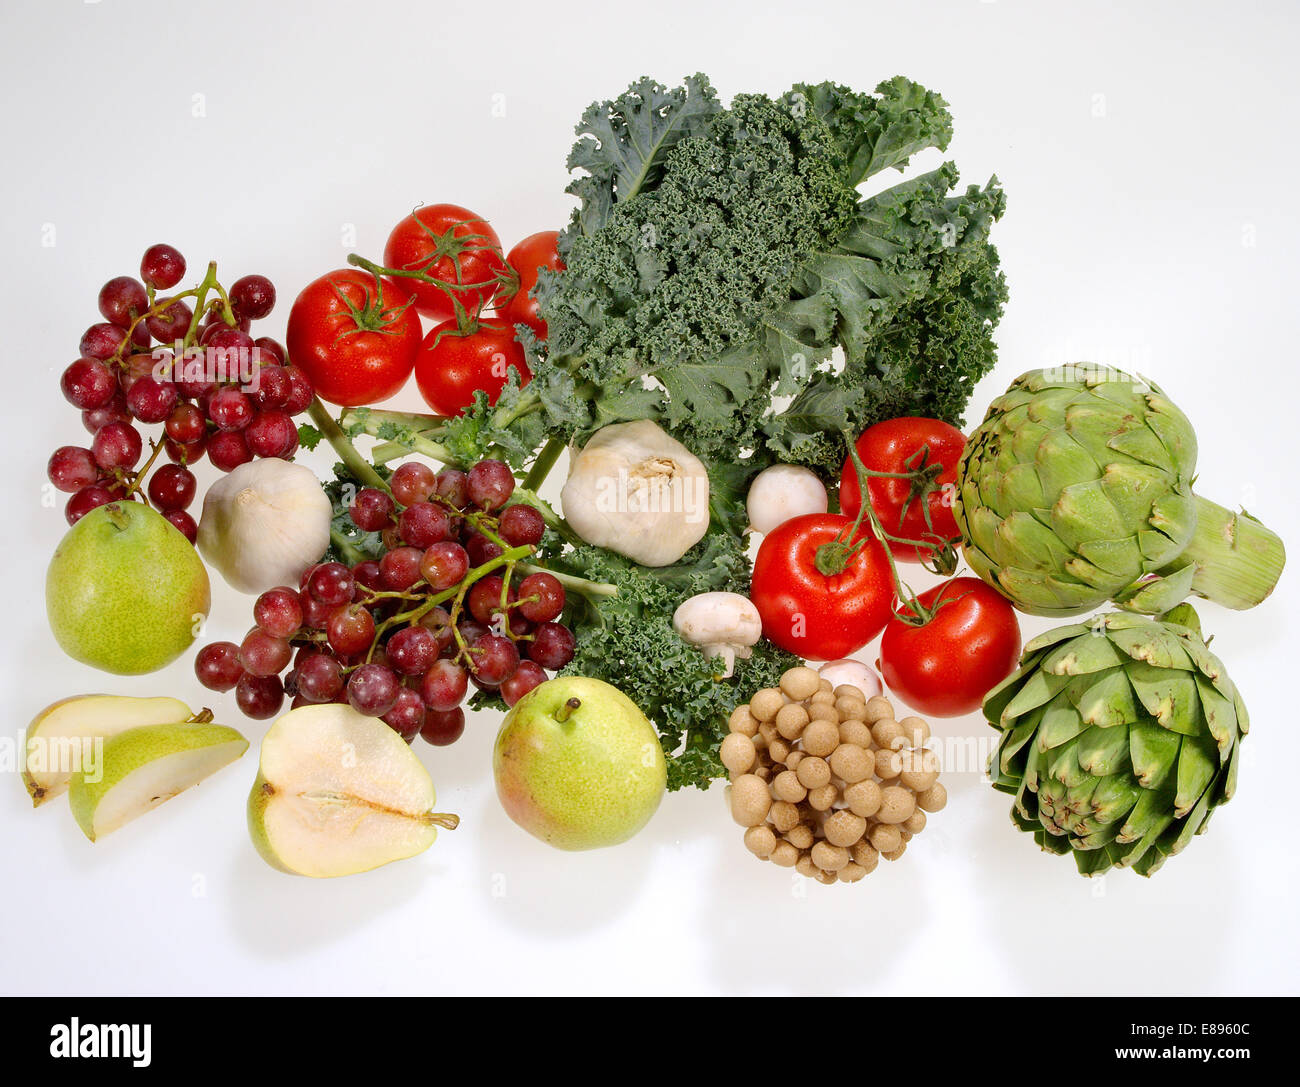 Frutas y hortalizas, incluidas las uvas rojas, rojo tomate, ajo, las alcachofas, las peras de Anjou, la col rizada, frondoso y champiñones. Foto de stock